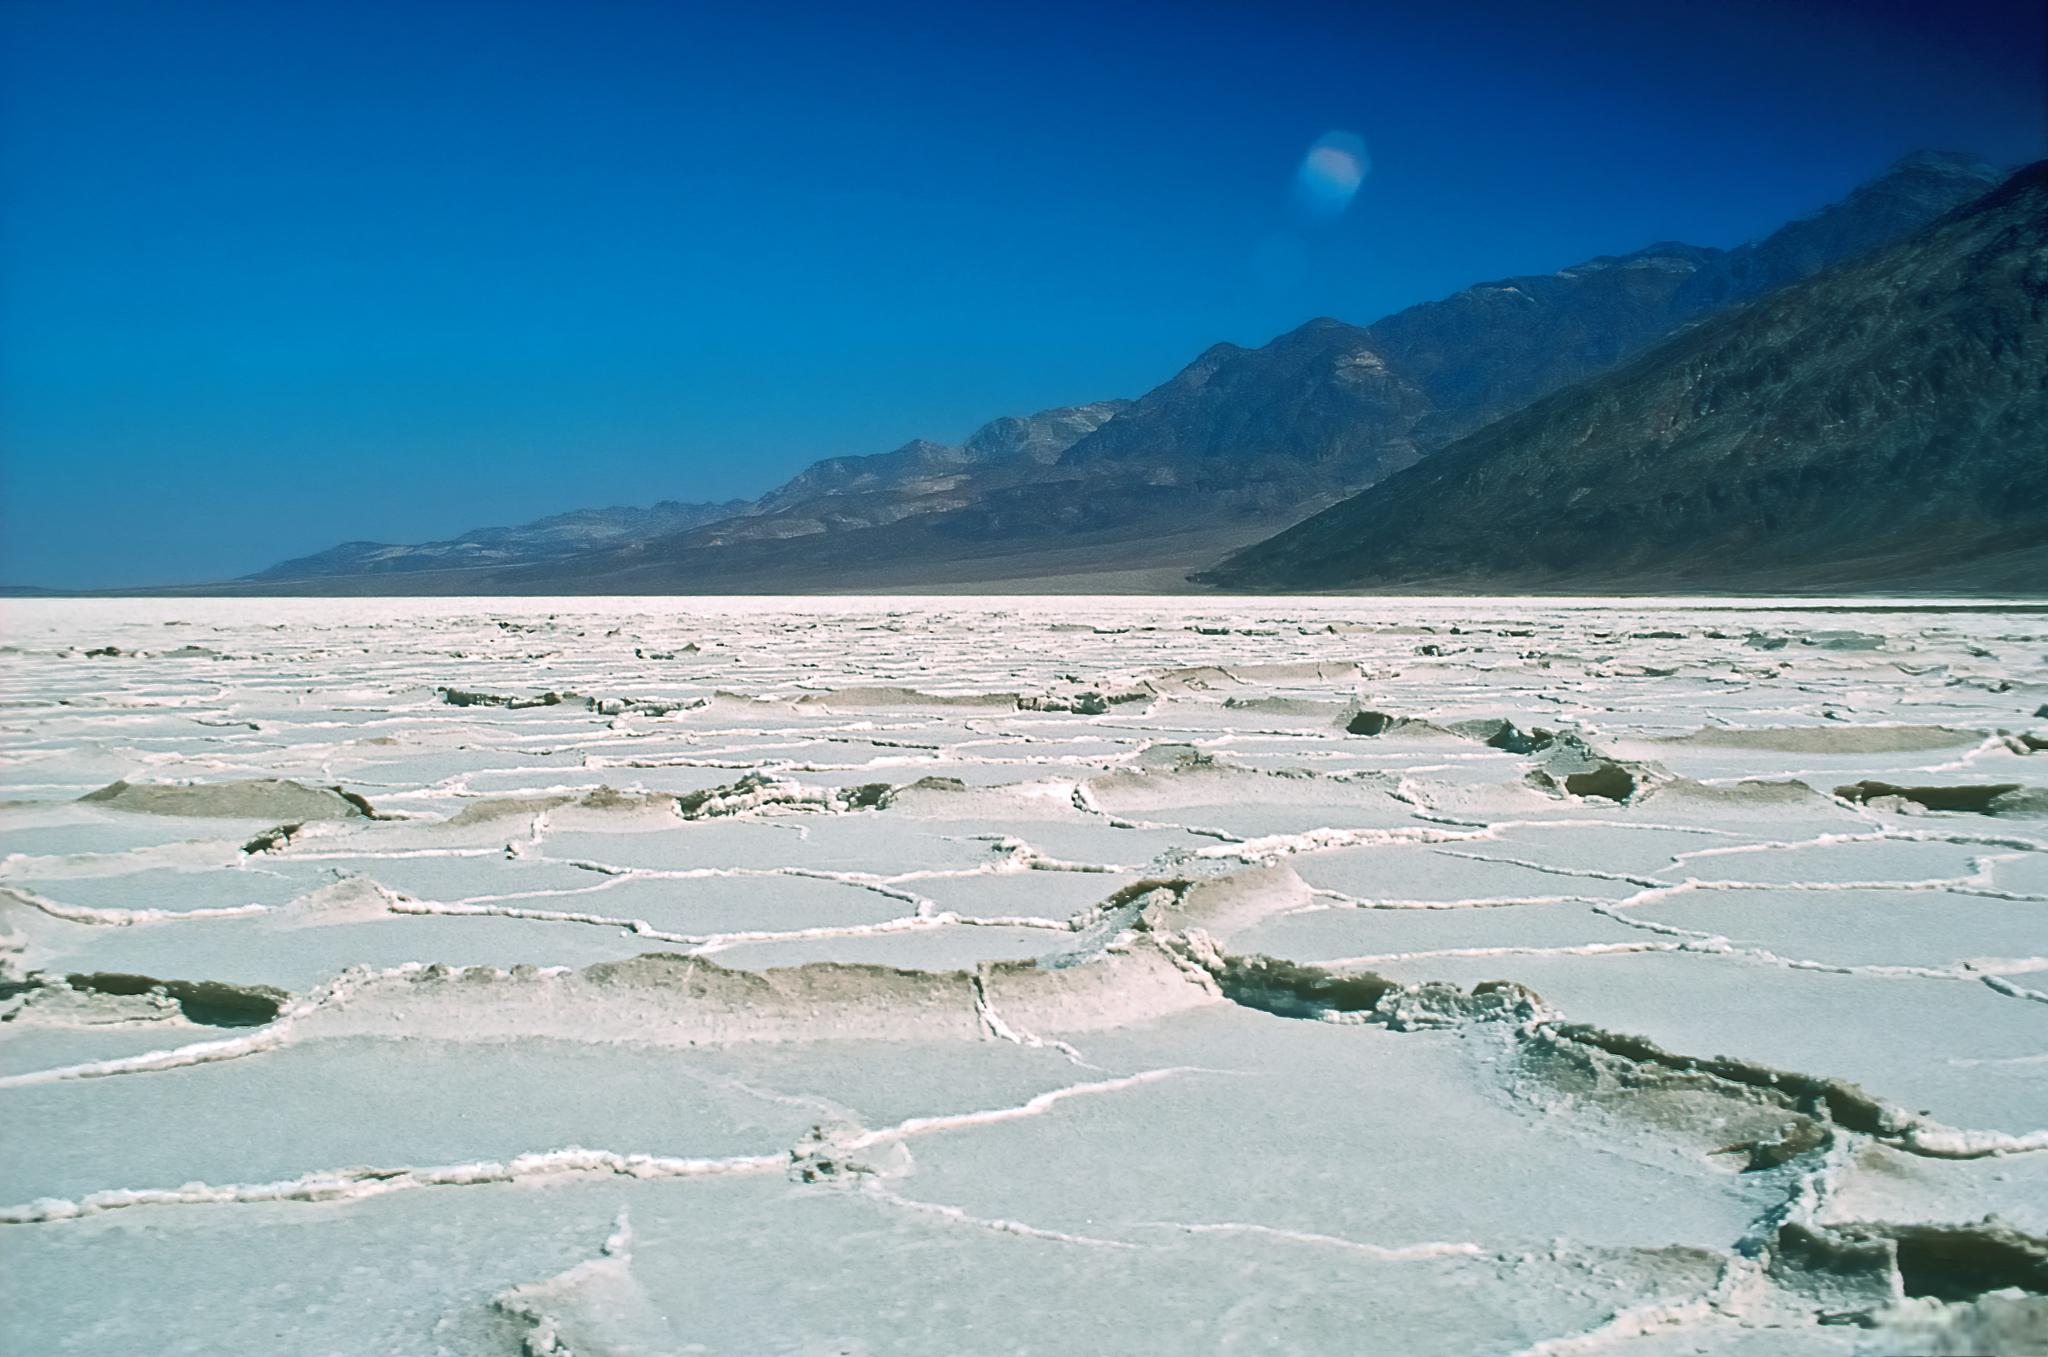 乌尤尼盐沼:漫步天空之镜 乌尤尼盐沼(uyuni salt flat)位于玻利维亚